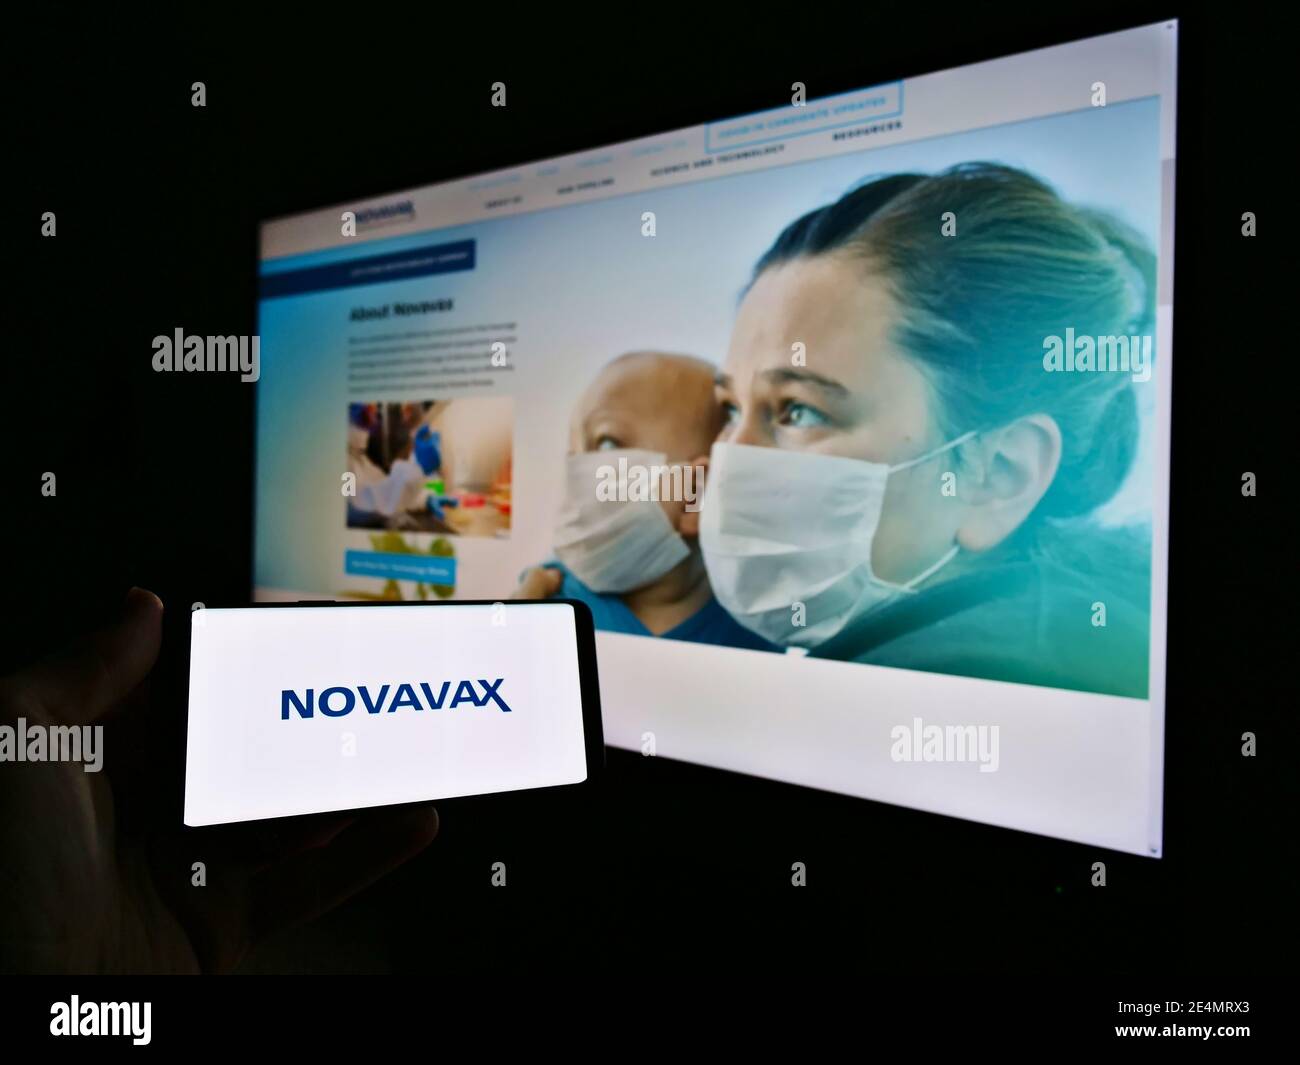 Persona che detiene il telefono cellulare con il logo della società di sviluppo vaccino US Novavax Inc. Sullo schermo di fronte al sito web aziendale. Mettere a fuoco il display del telefono. Foto Stock